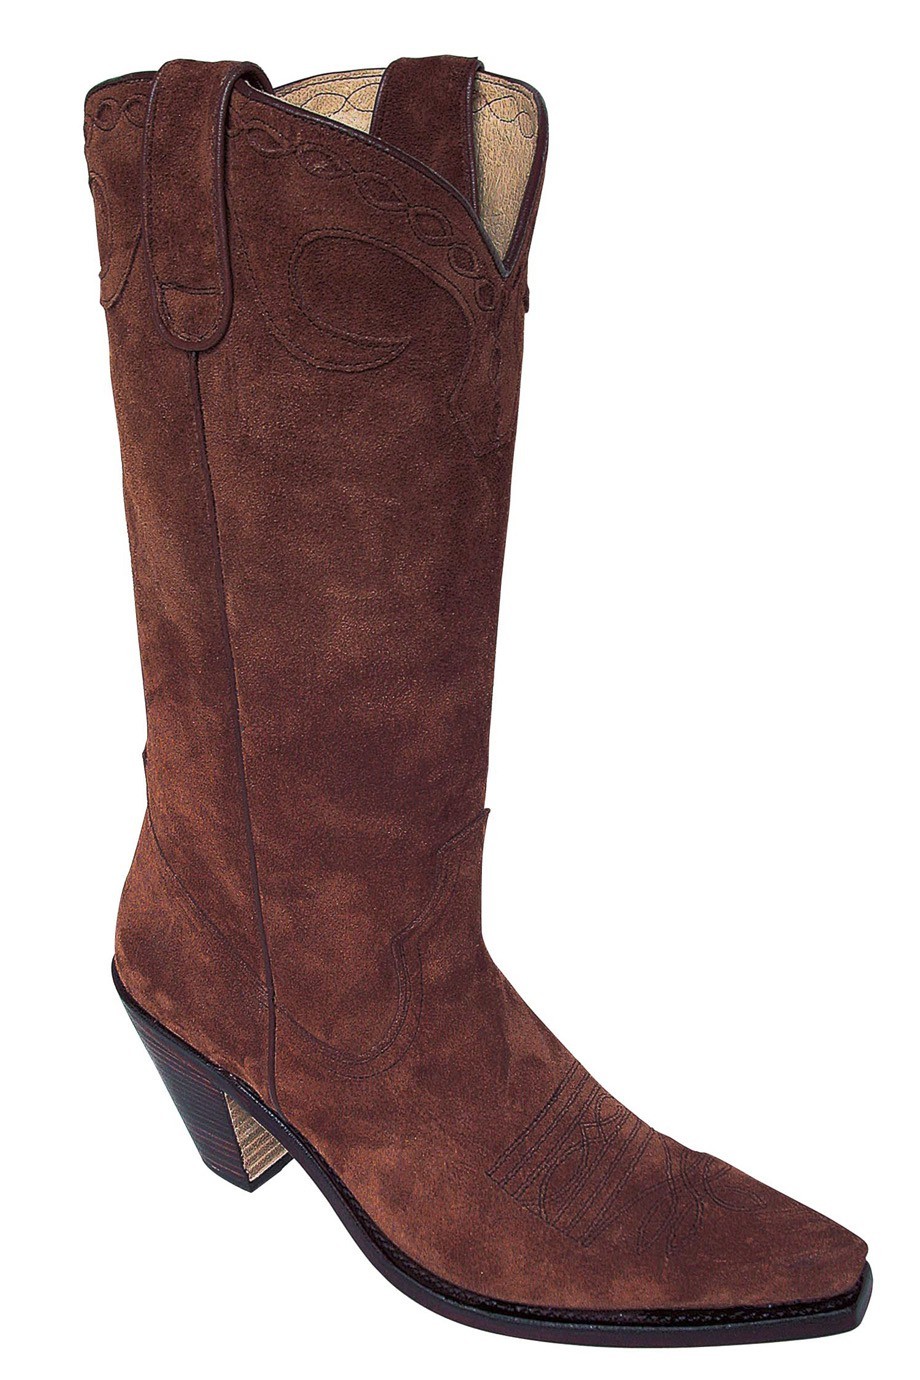 custom womens cowboy boots